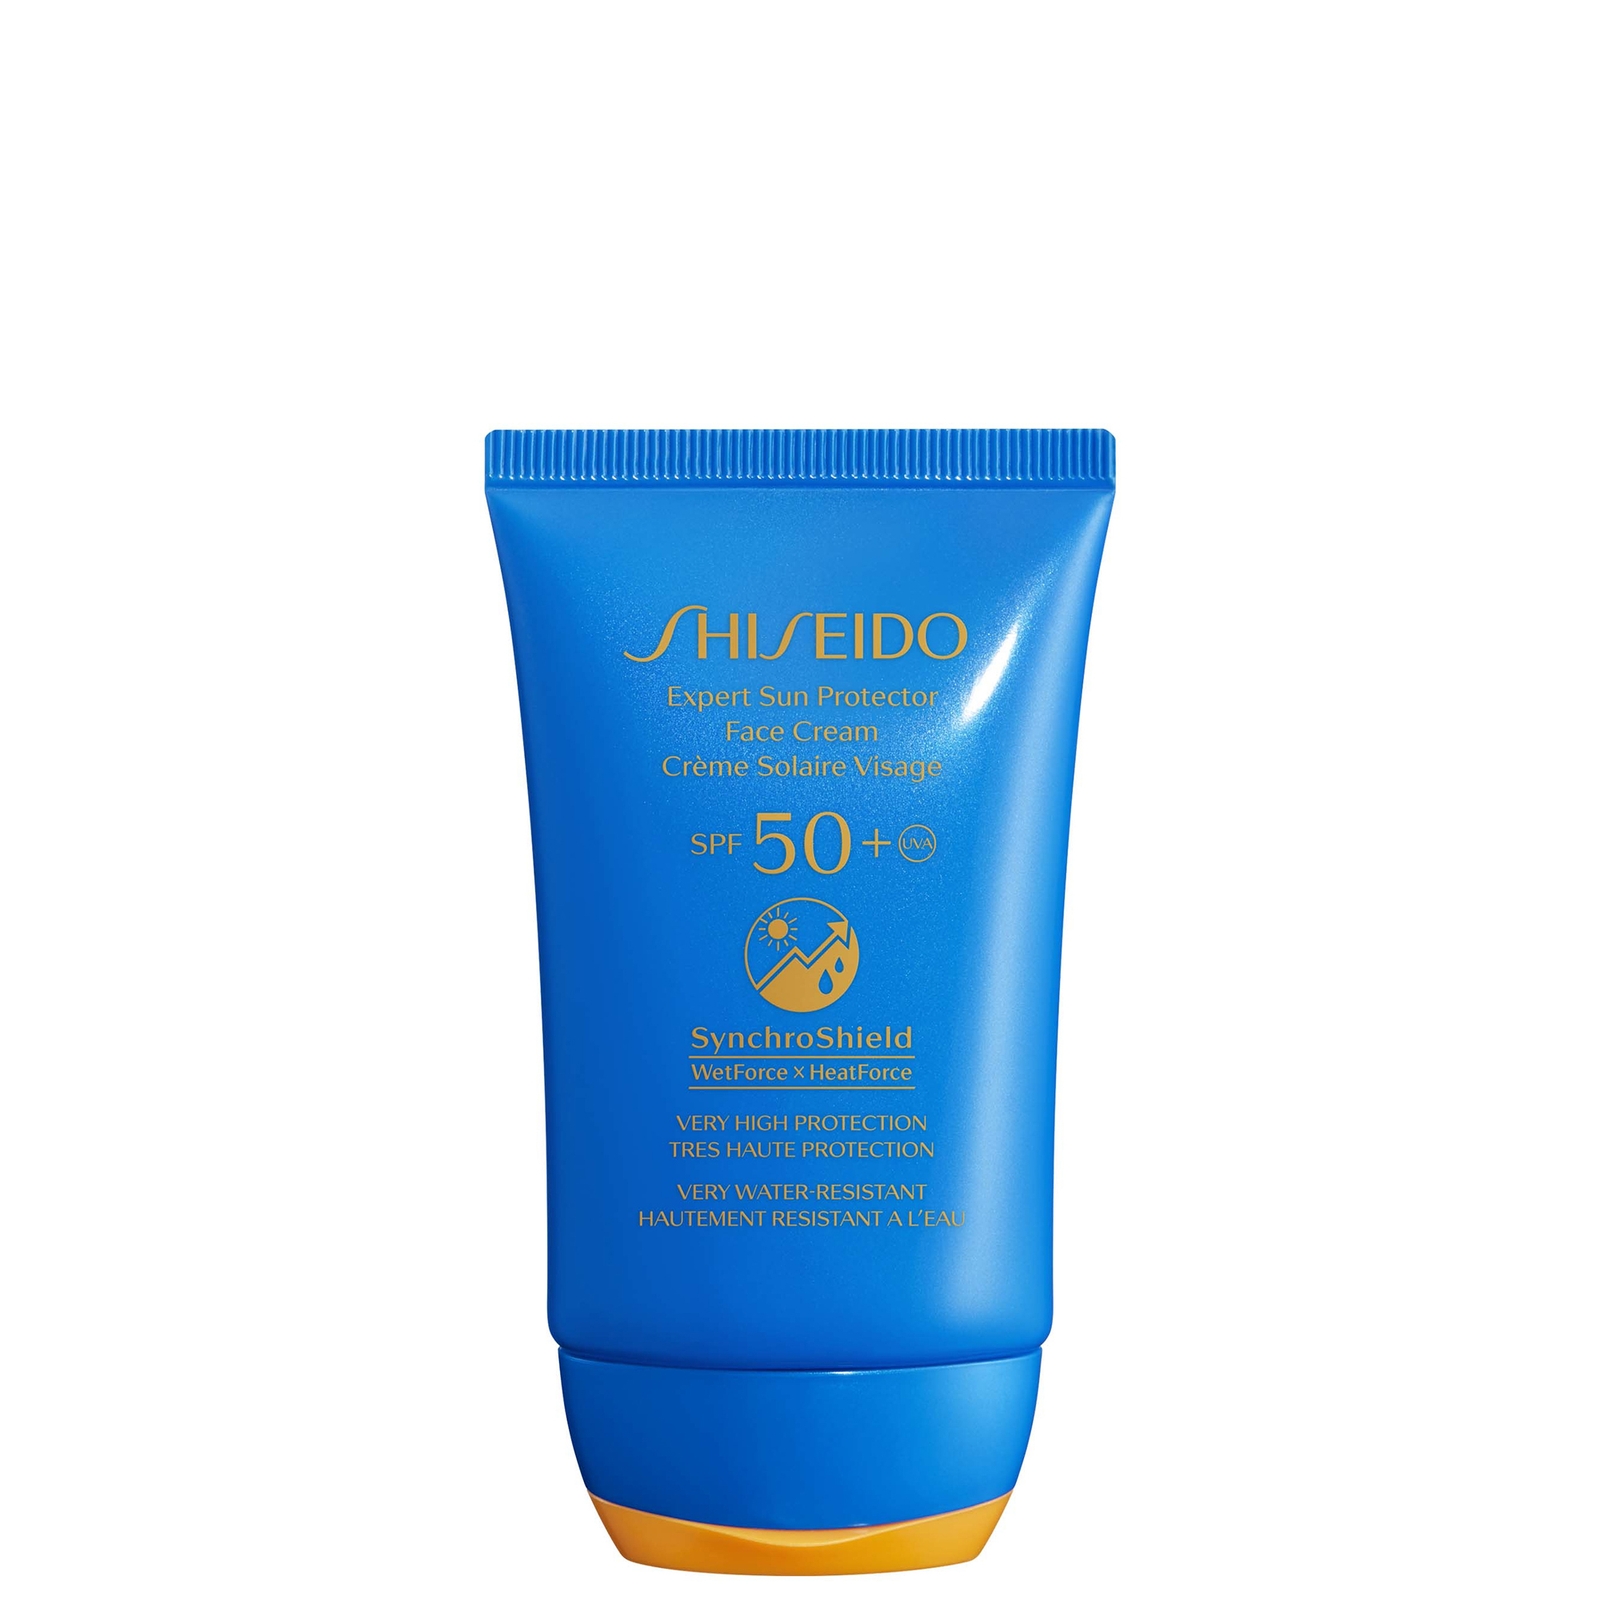 Photos - Cream / Lotion Shiseido Expert Sun Protector Face Cream SPF50+ 